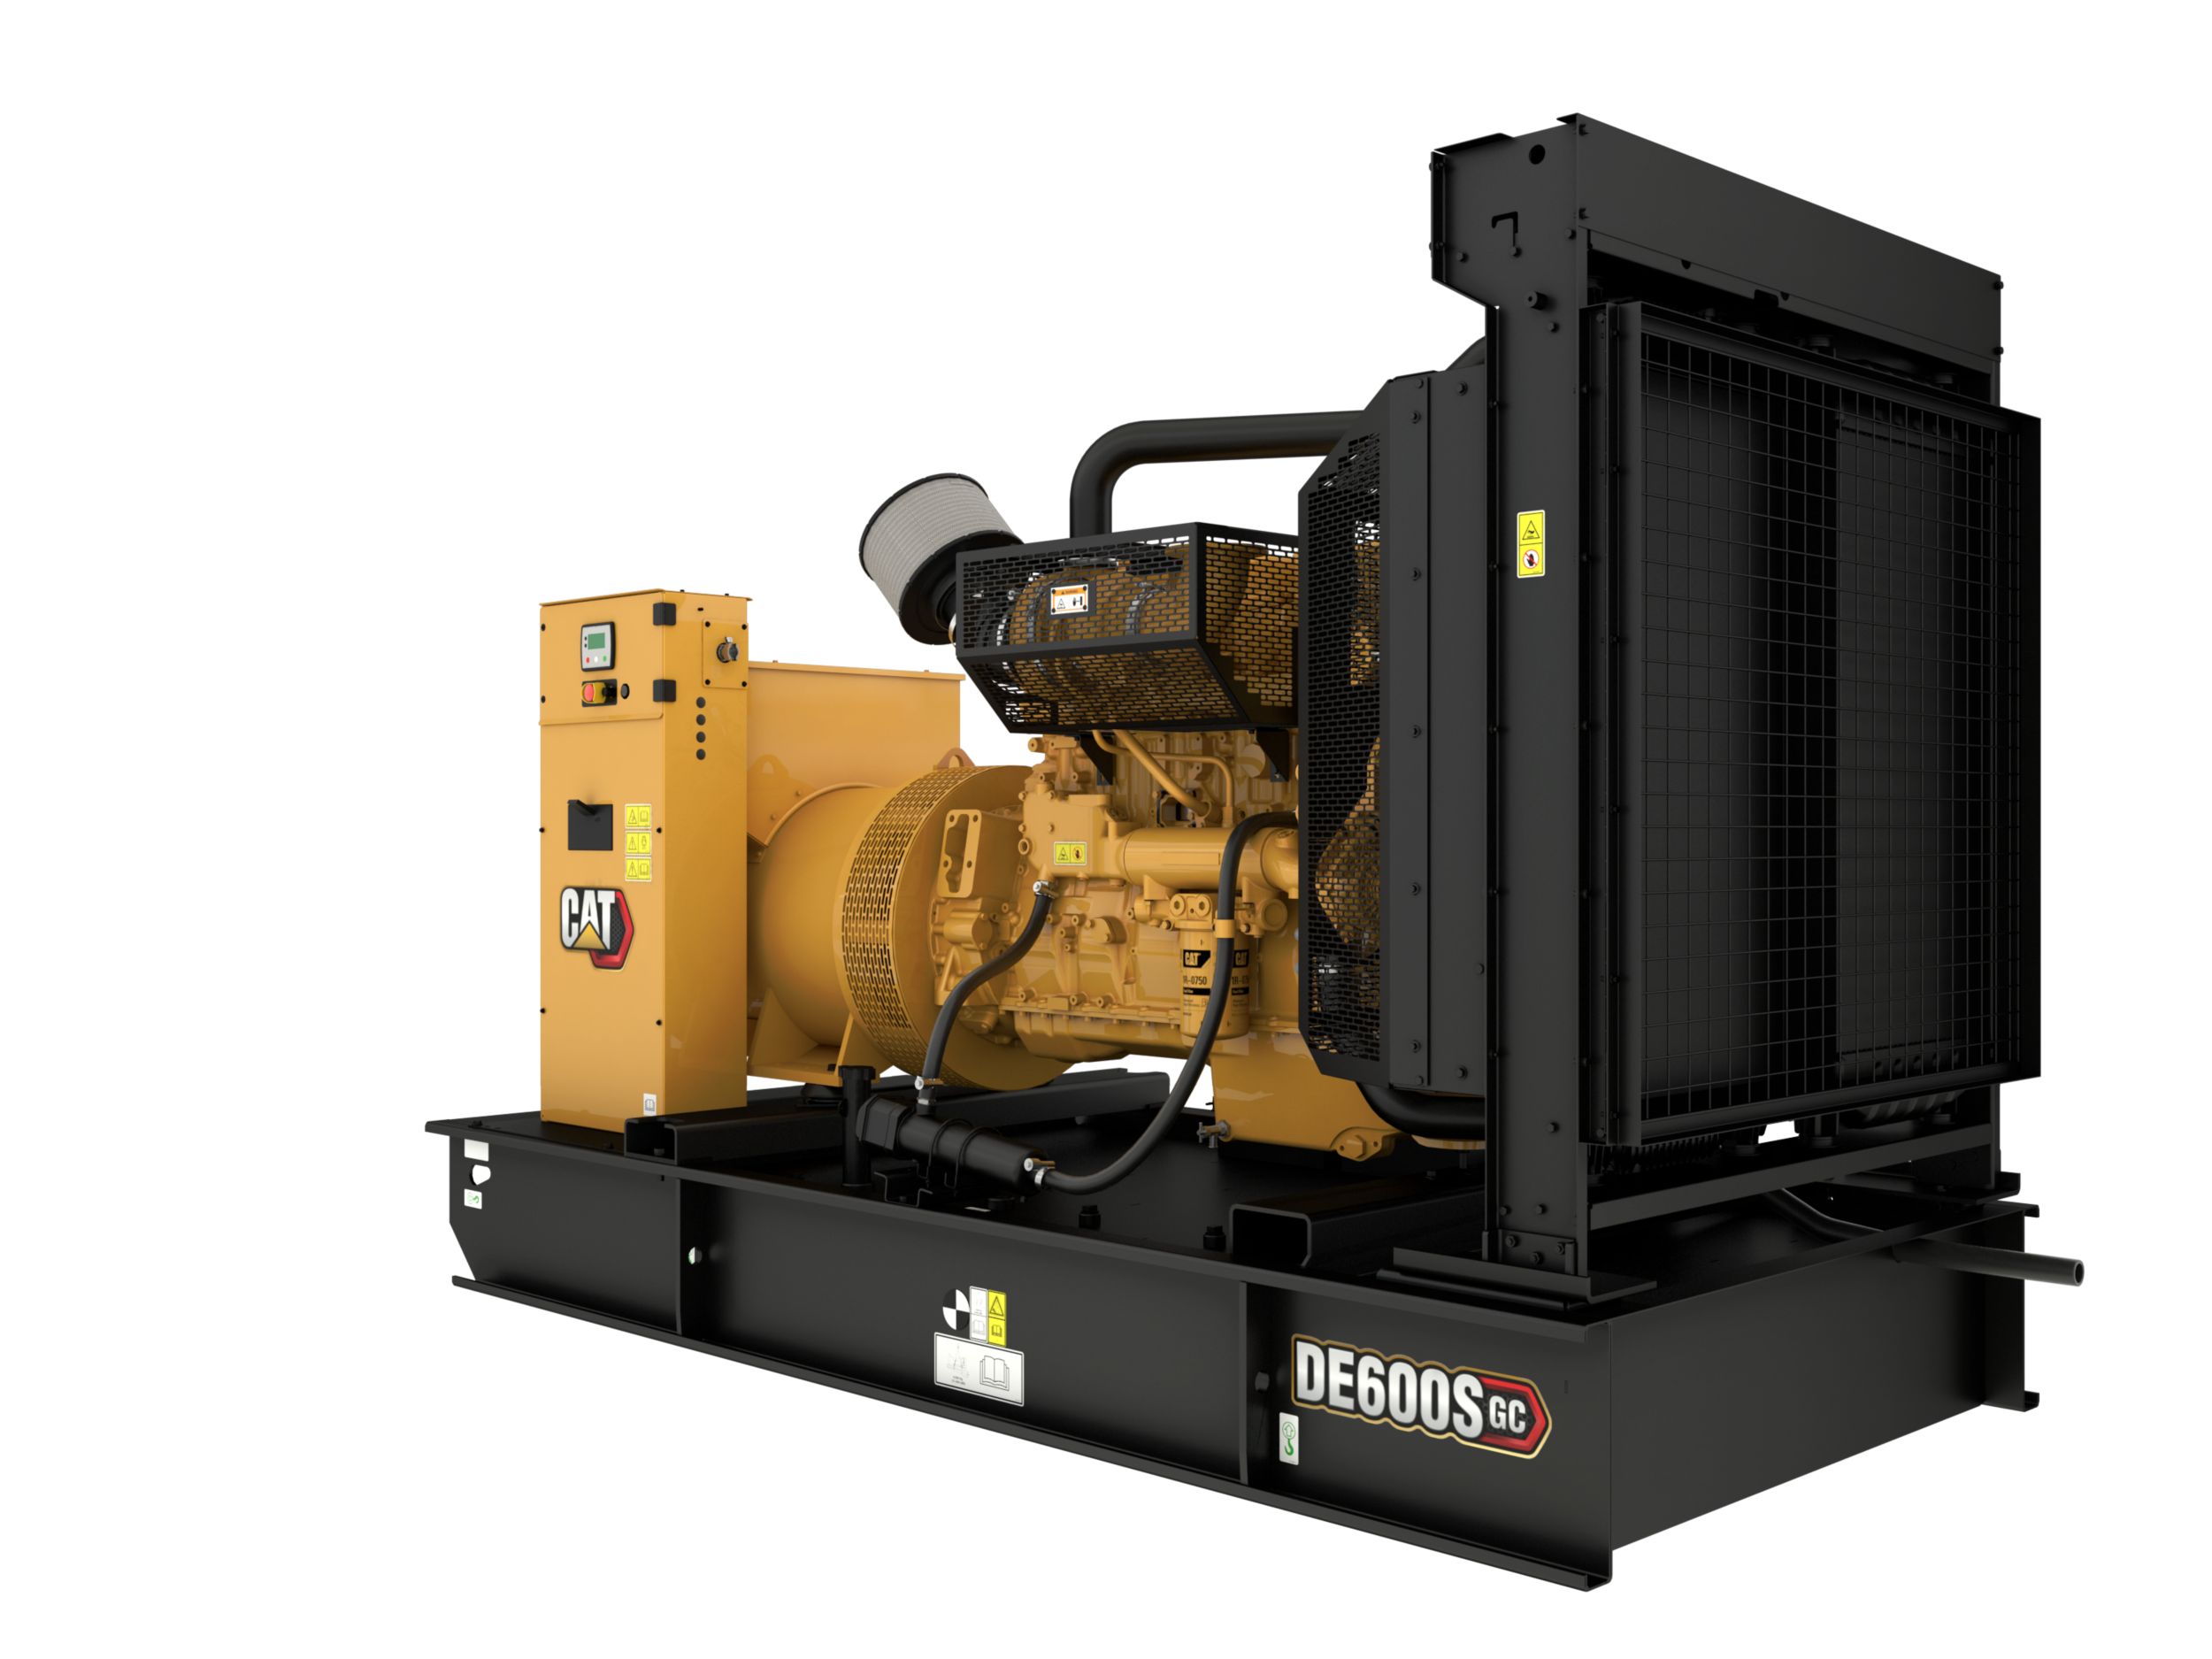 DE600S GC (60 Hz) Generator Set